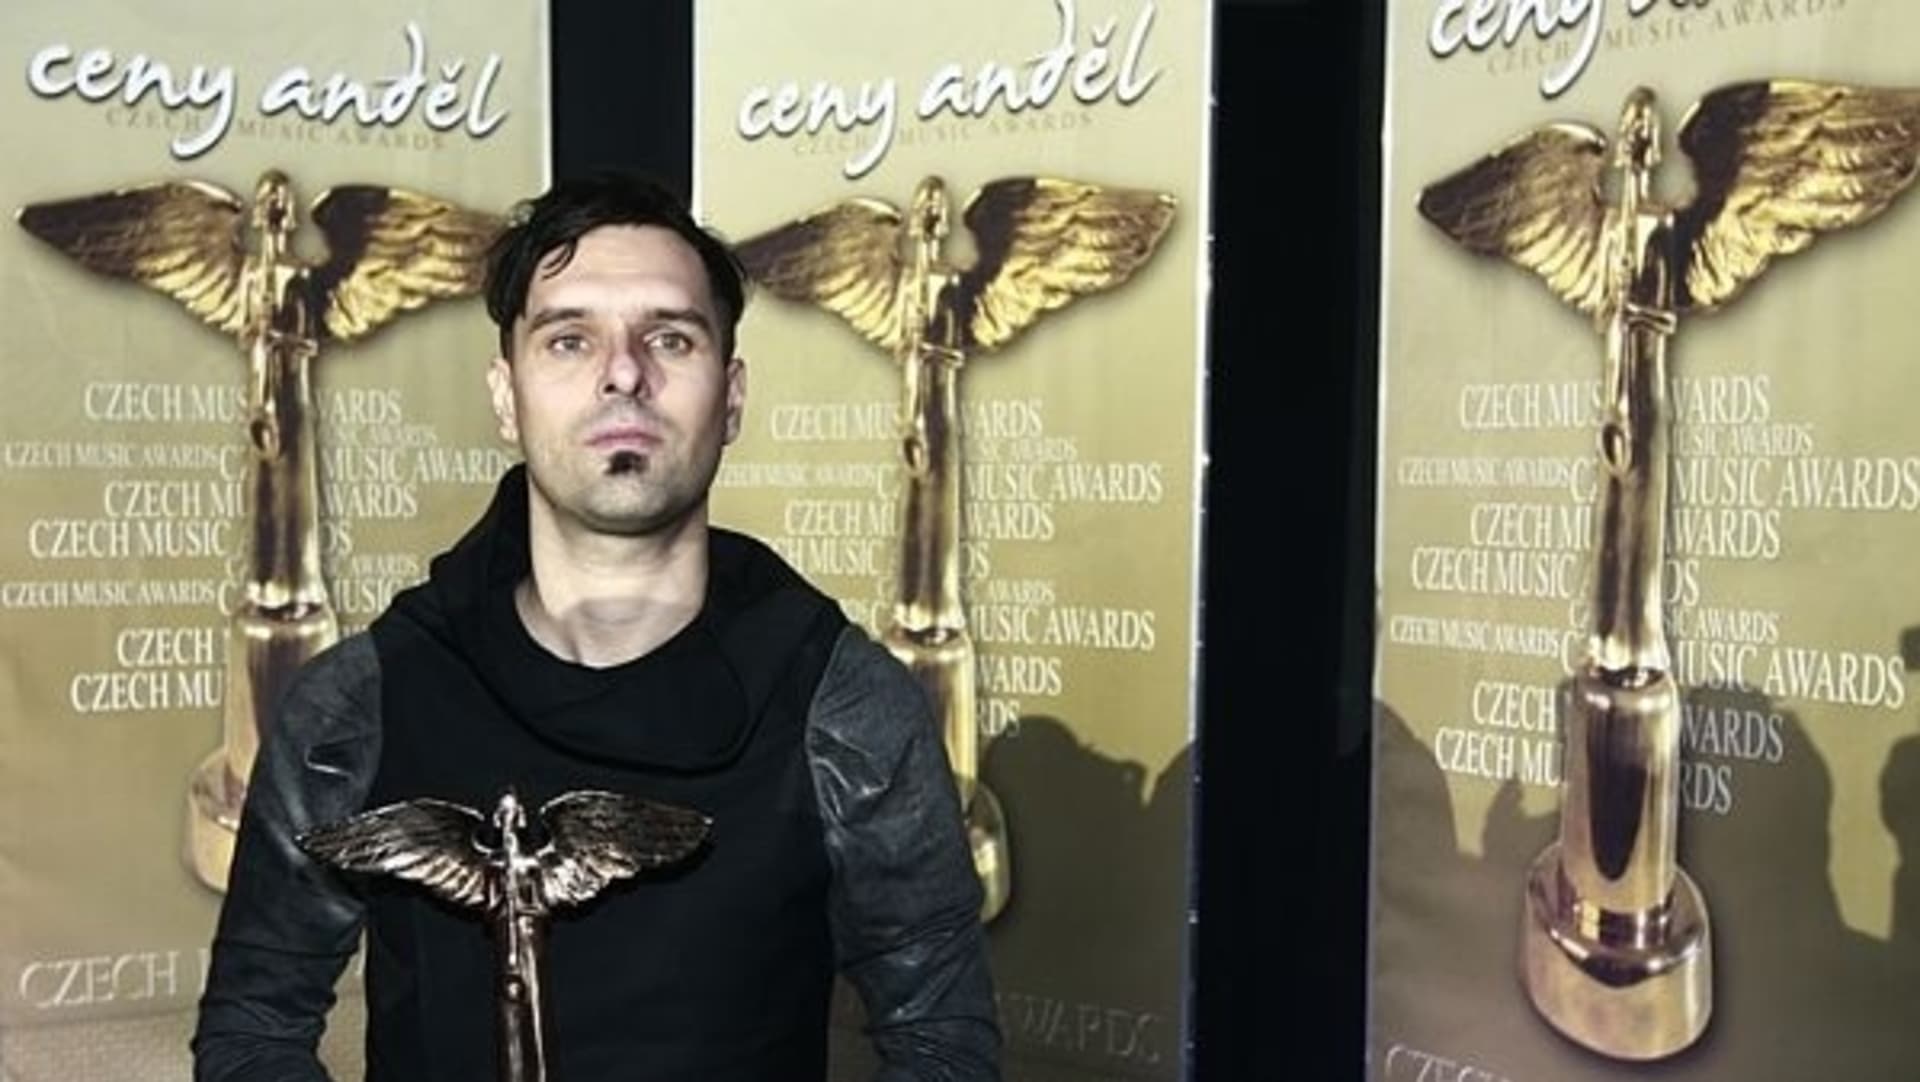 Letos dostal i cenu Anděl za nejlepší videoklip a nejlepší elektronické album